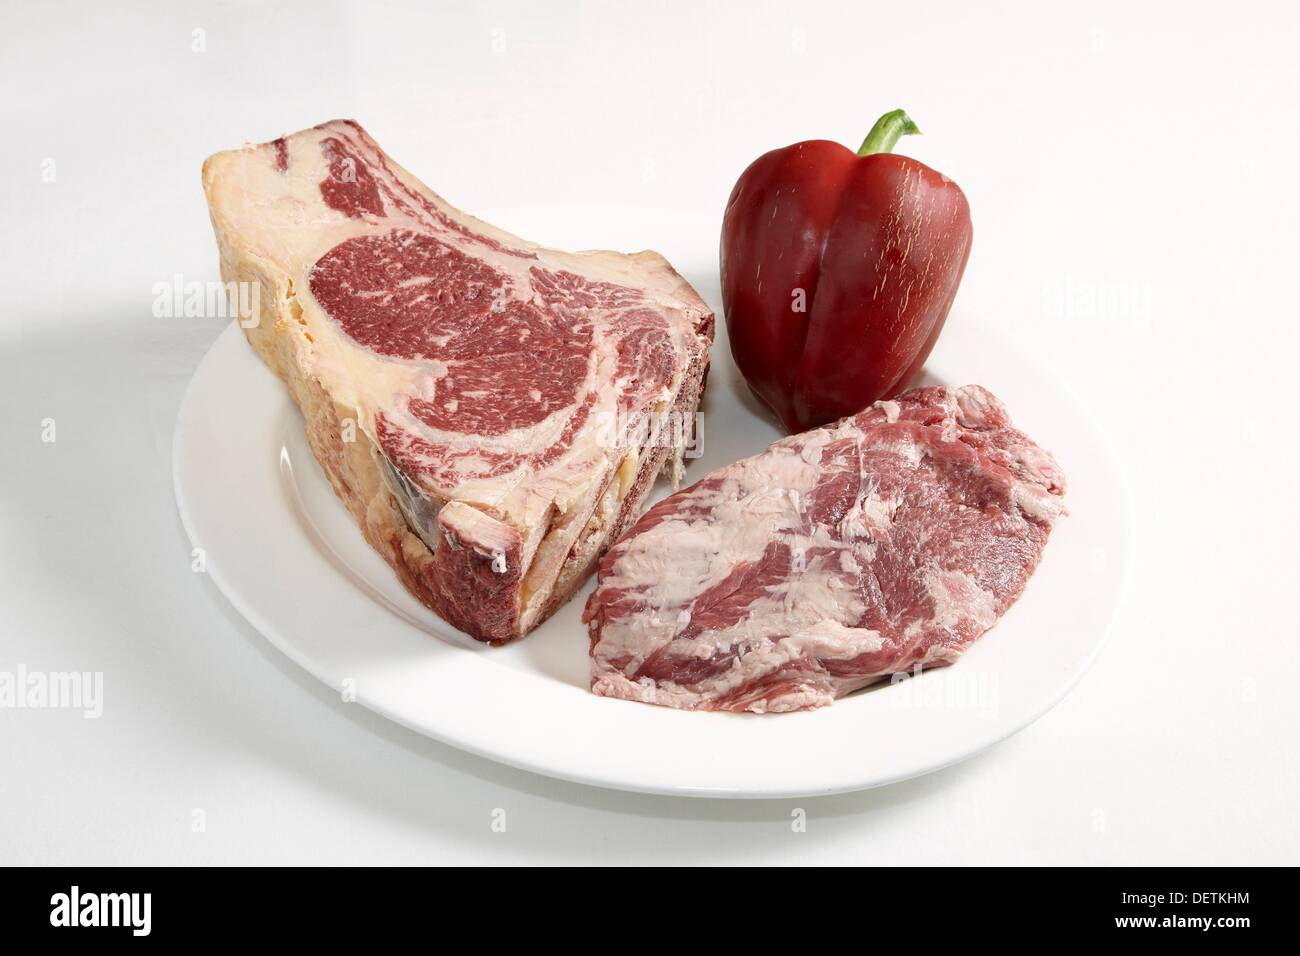 Carnes a la brasa, Restaurante Asador La Paz, Moaña, pontevedra, España  Spain Stock Photo - Alamy